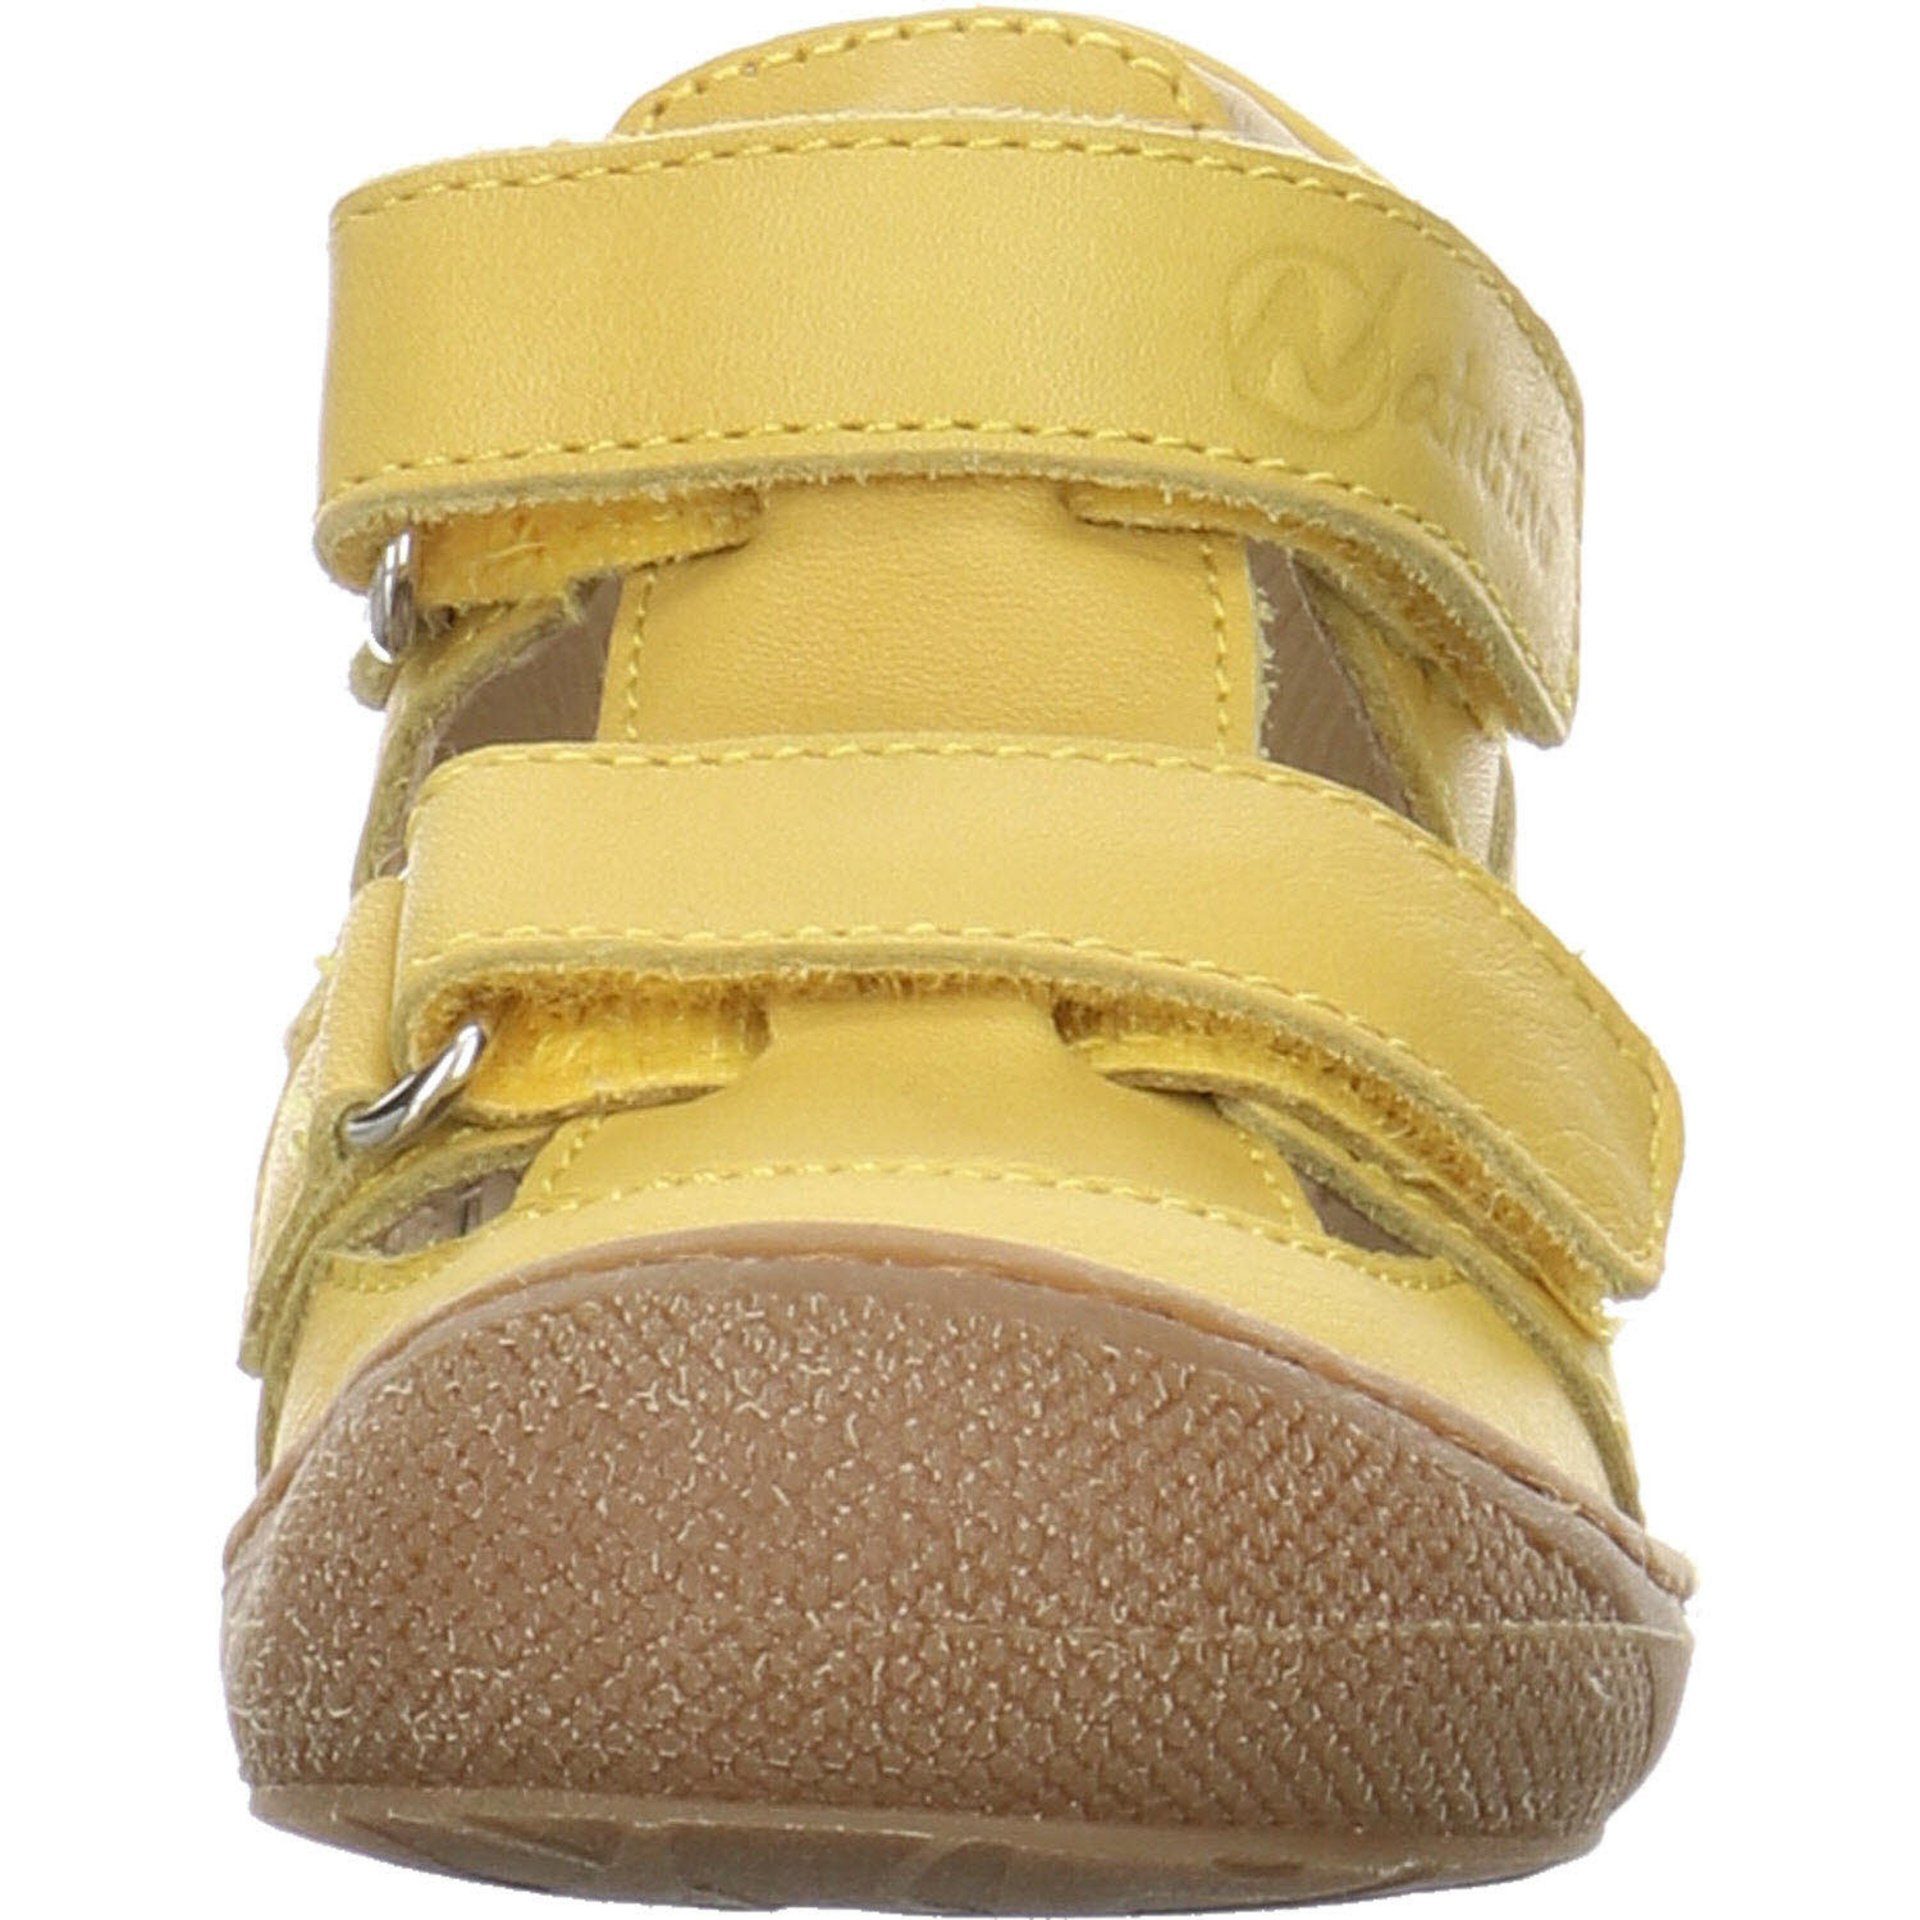 Naturino Jungen Sandalen Schuhe Puffy Minilette Lauflernschuh Glattleder gelb hell